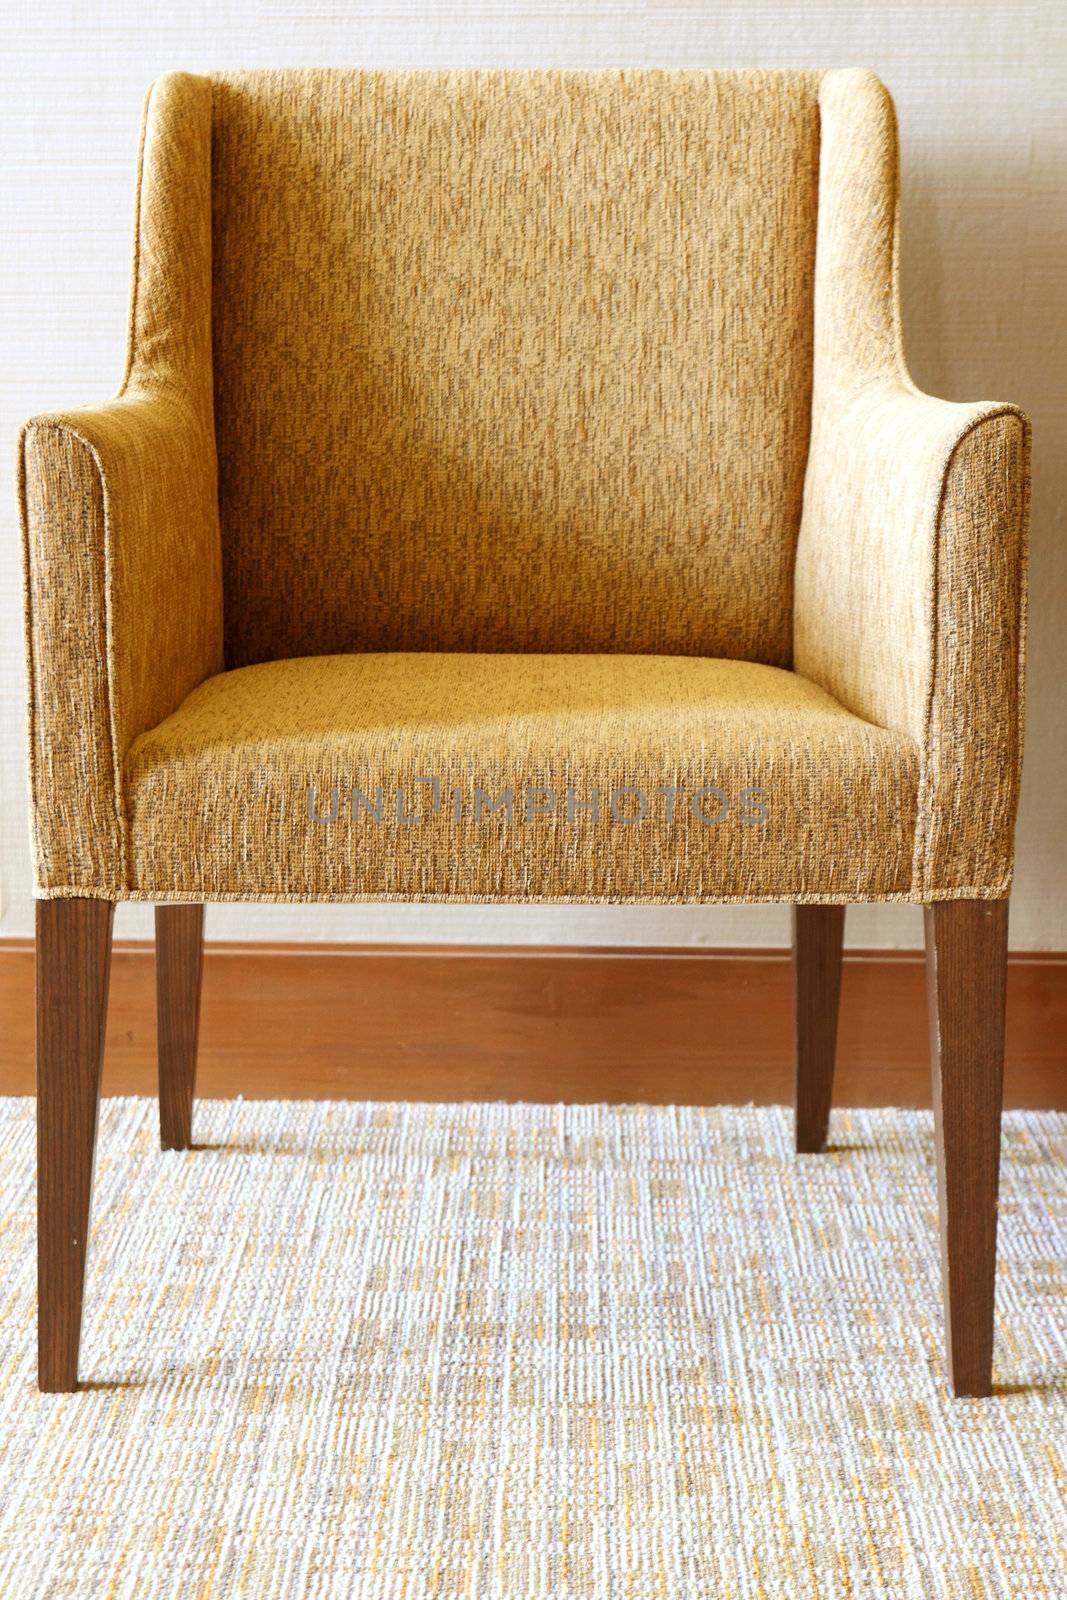 Brown modern chair in living room by nuchylee